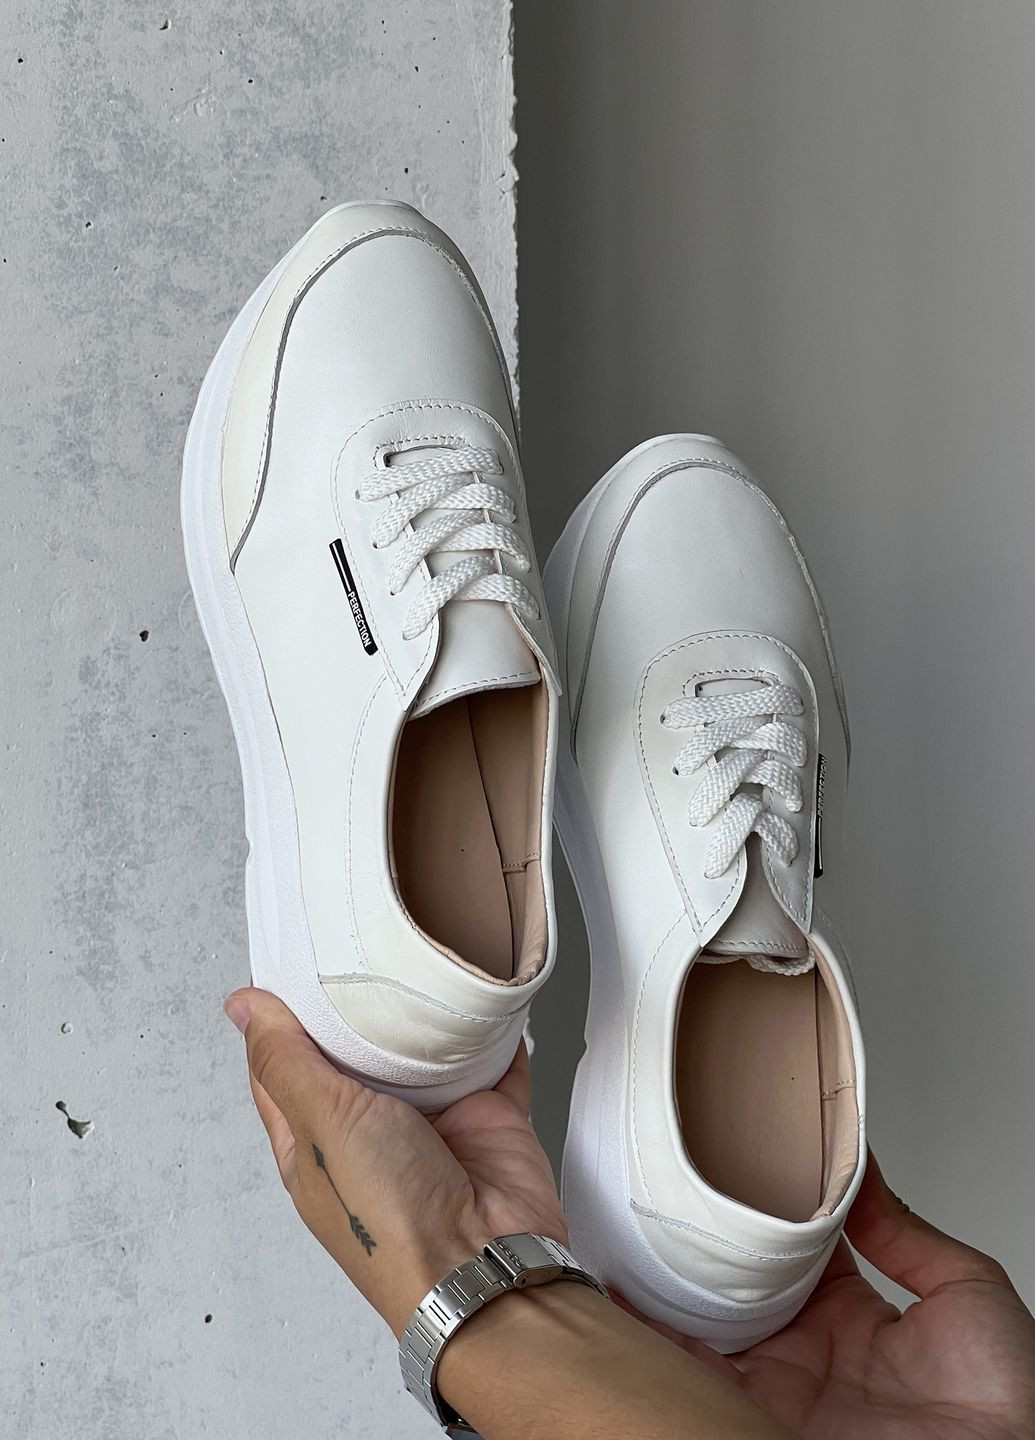 Белые демисезонные трендовые женские белые кроссовки из натуральной кожи InFashion Кросівки